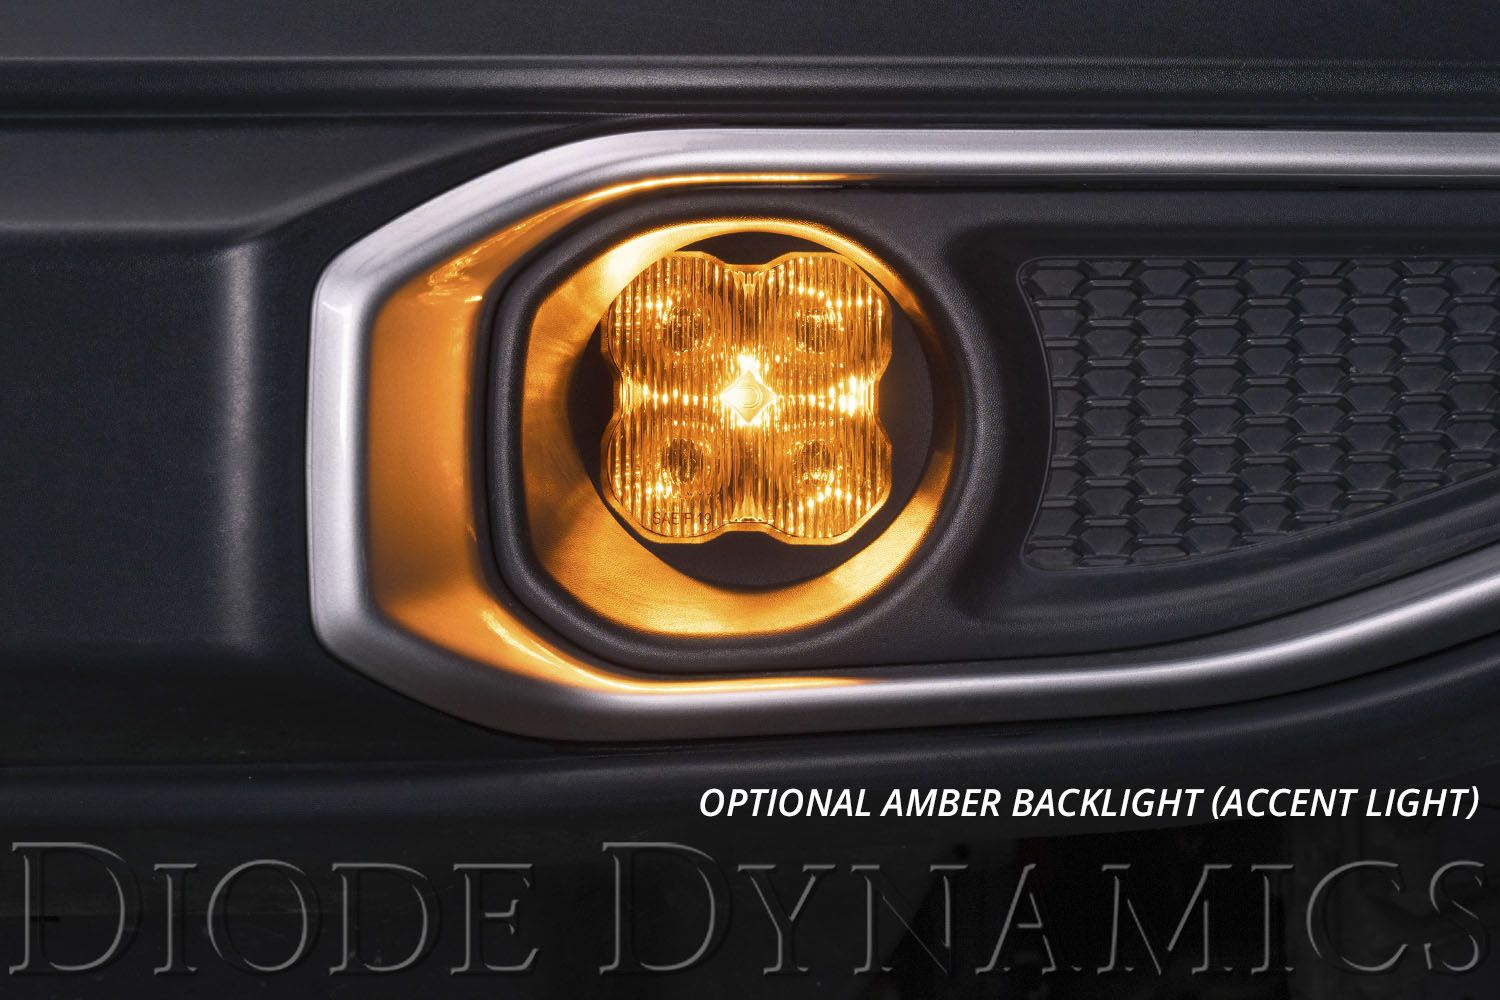 SS3 LED Fog Light Kit for 2013-2016 Ford C-Max Diode Dynamics-